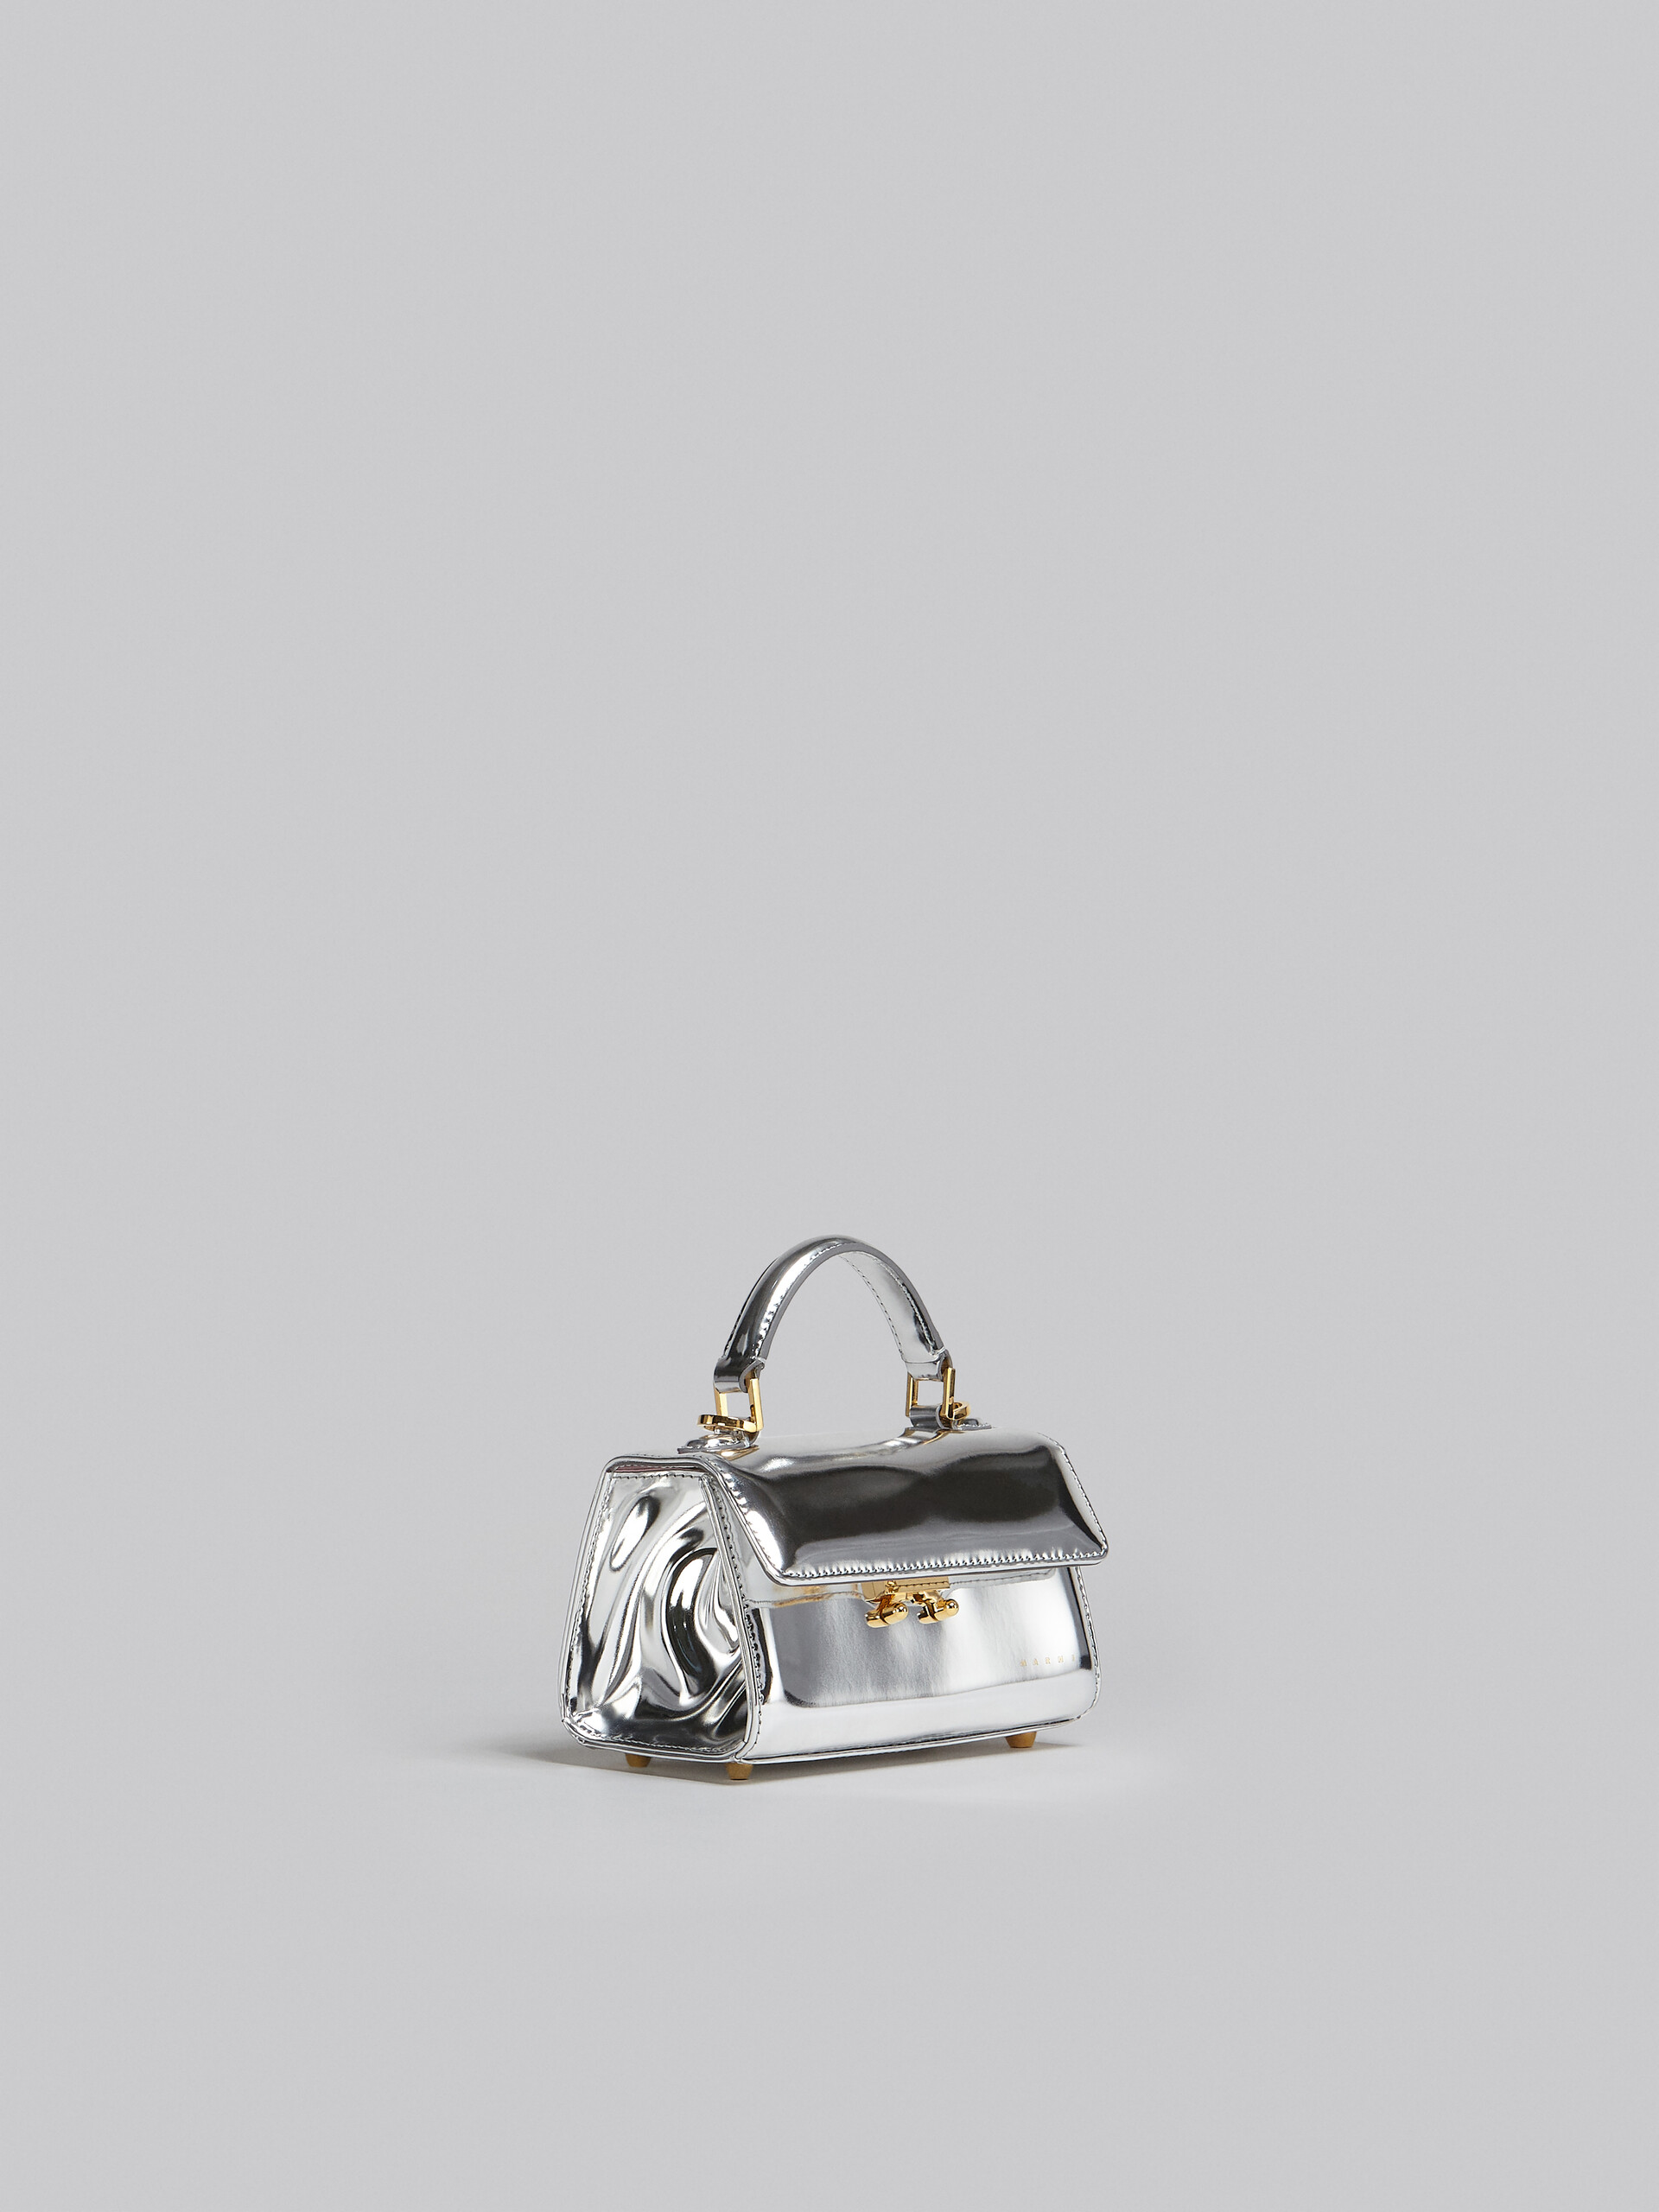 Relativity Bag Mini in pelle specchiata argento - Borse a mano - Image 6